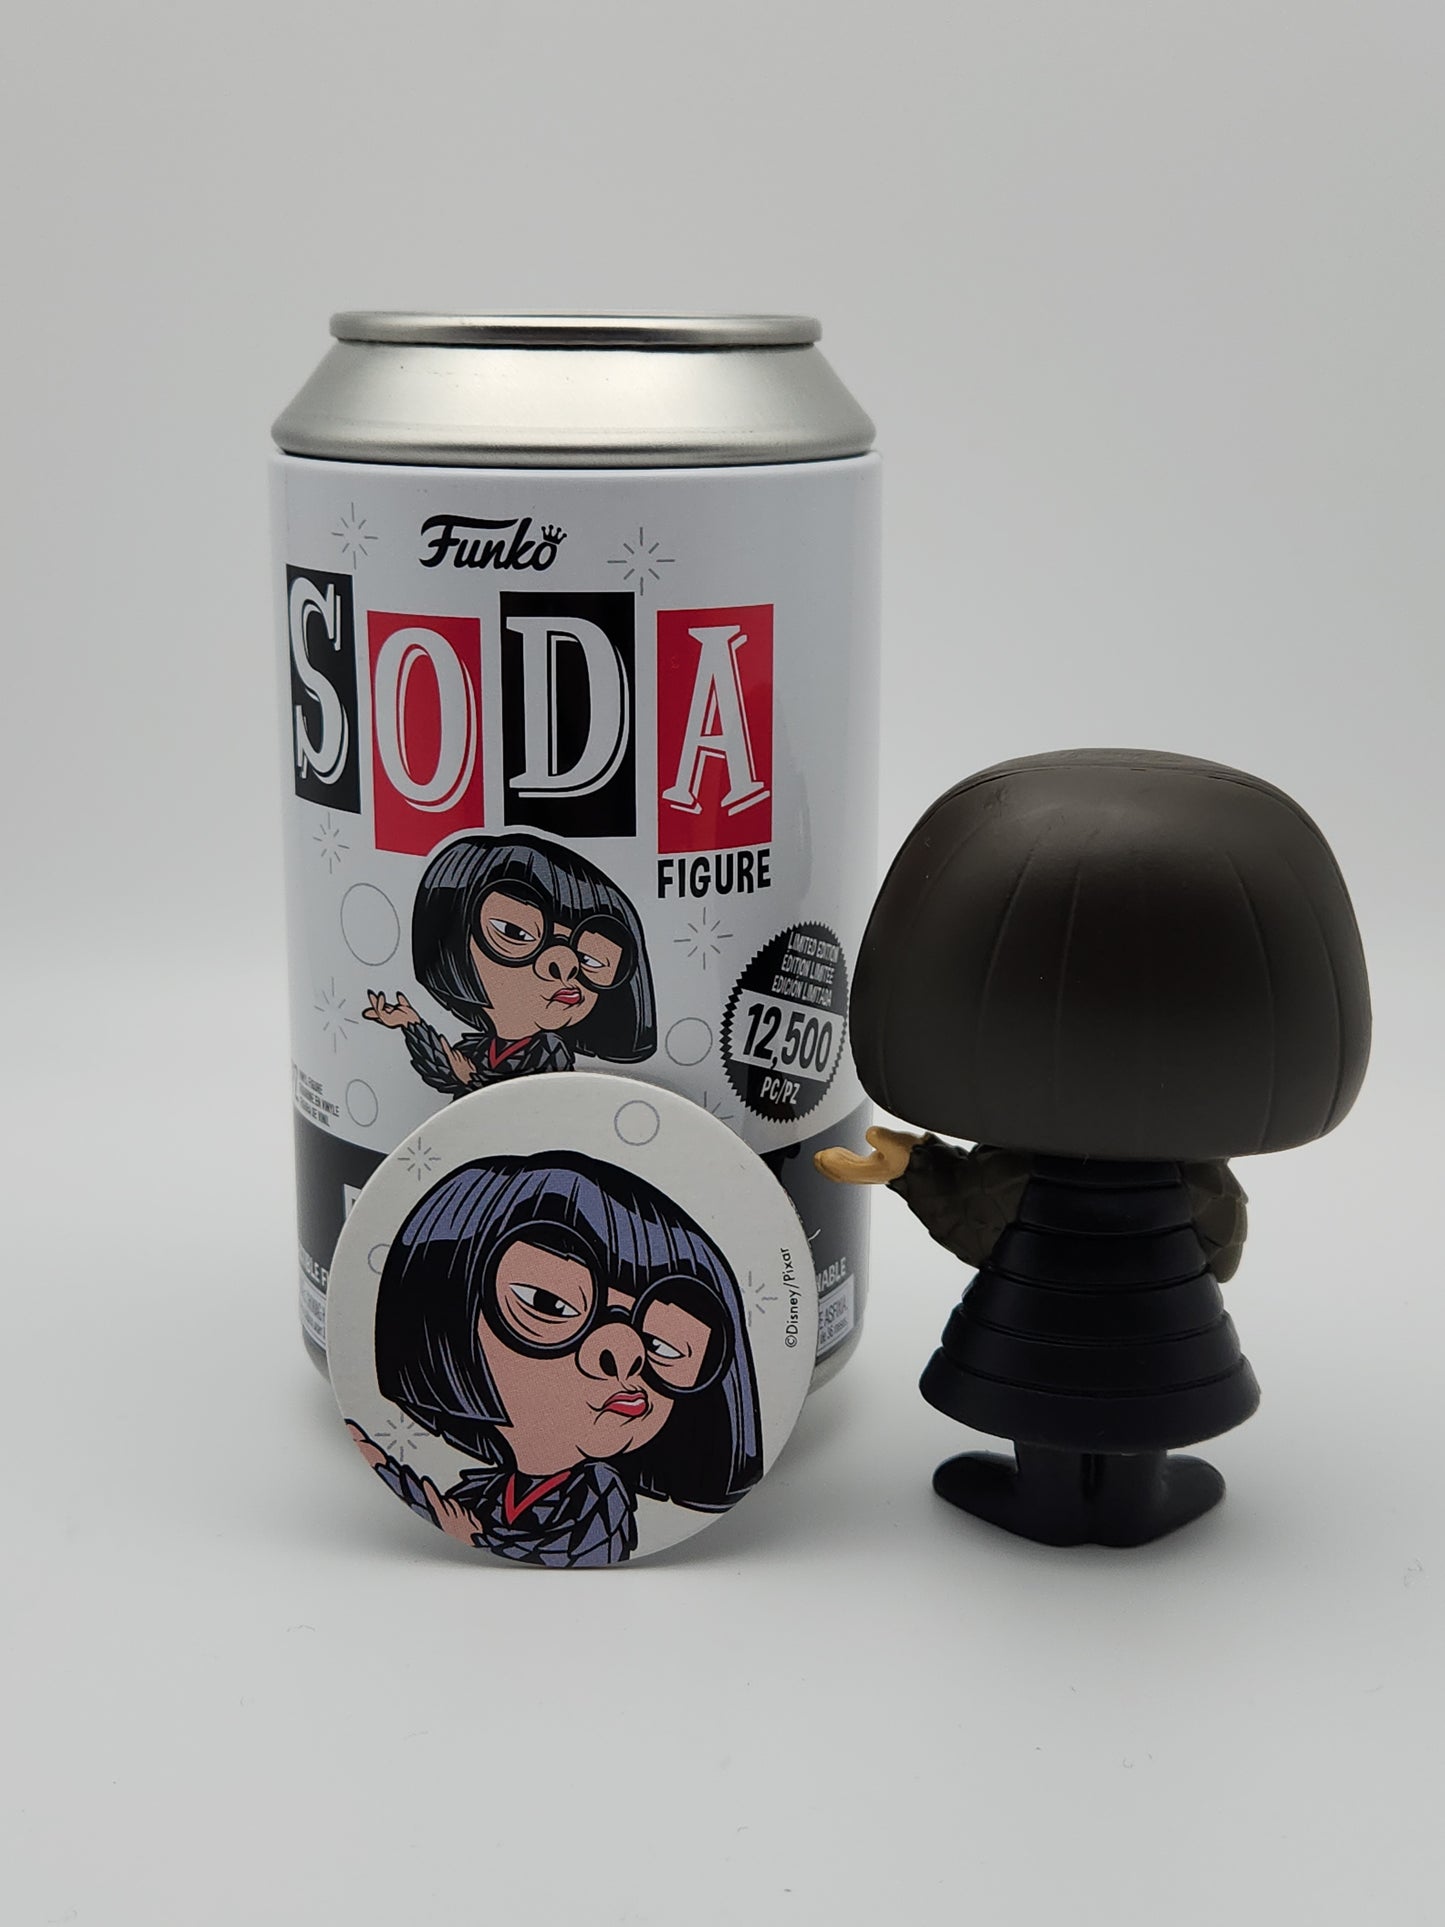 Funko Soda- Edna Mode